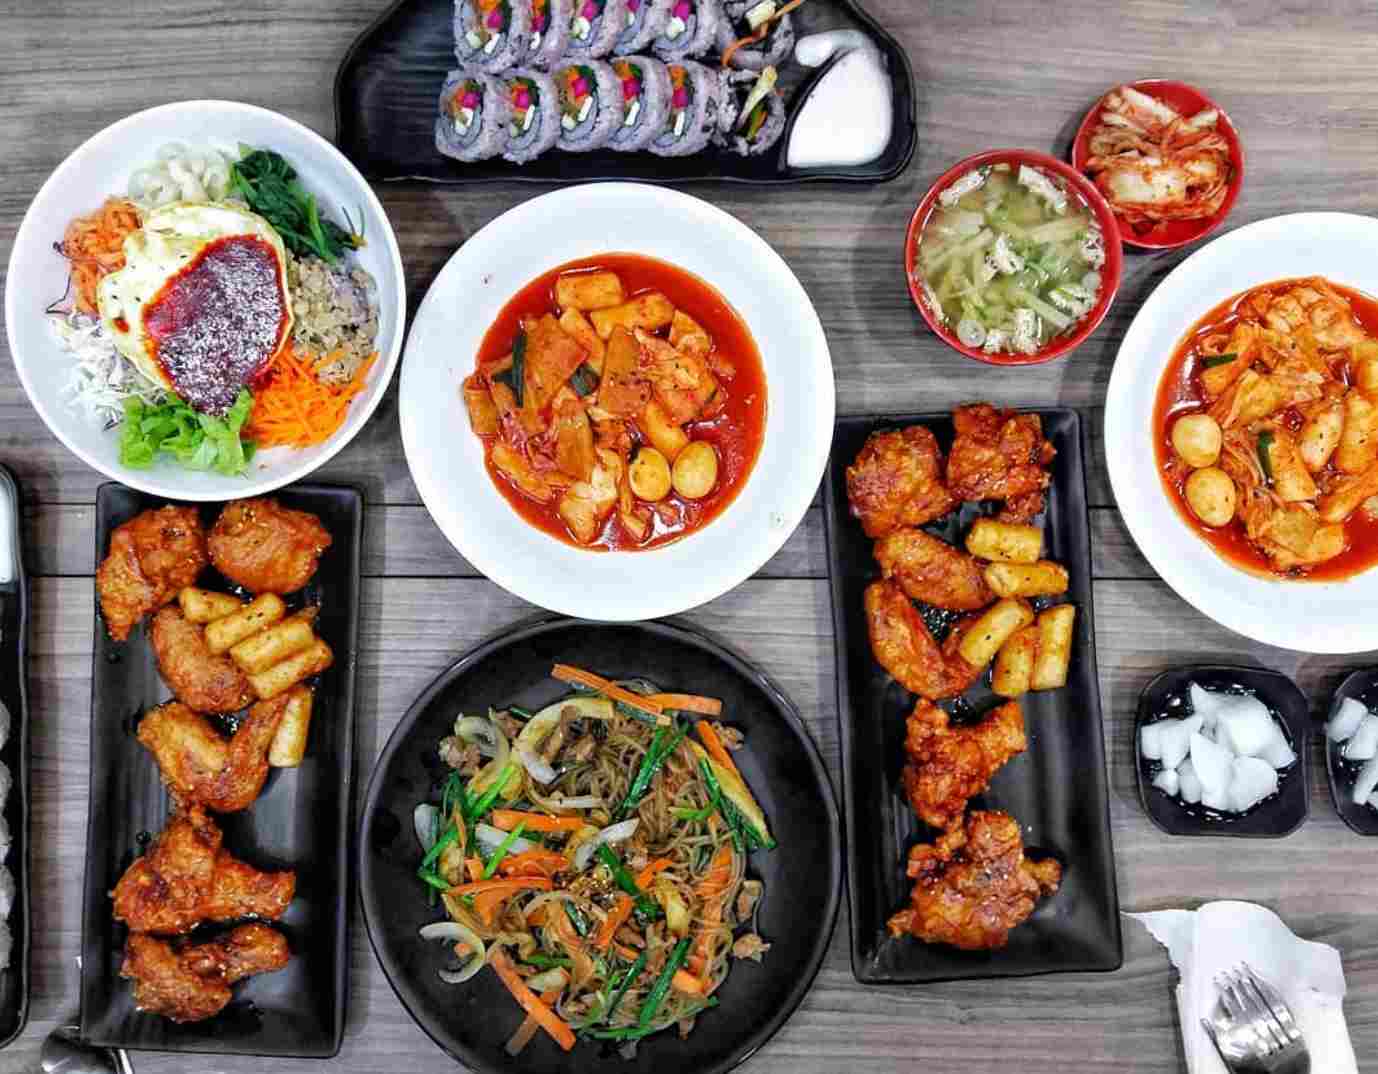 [REVIEW] nhà hàng Hàn quốc Hanuri Korean fast food có gì đặc sắc?